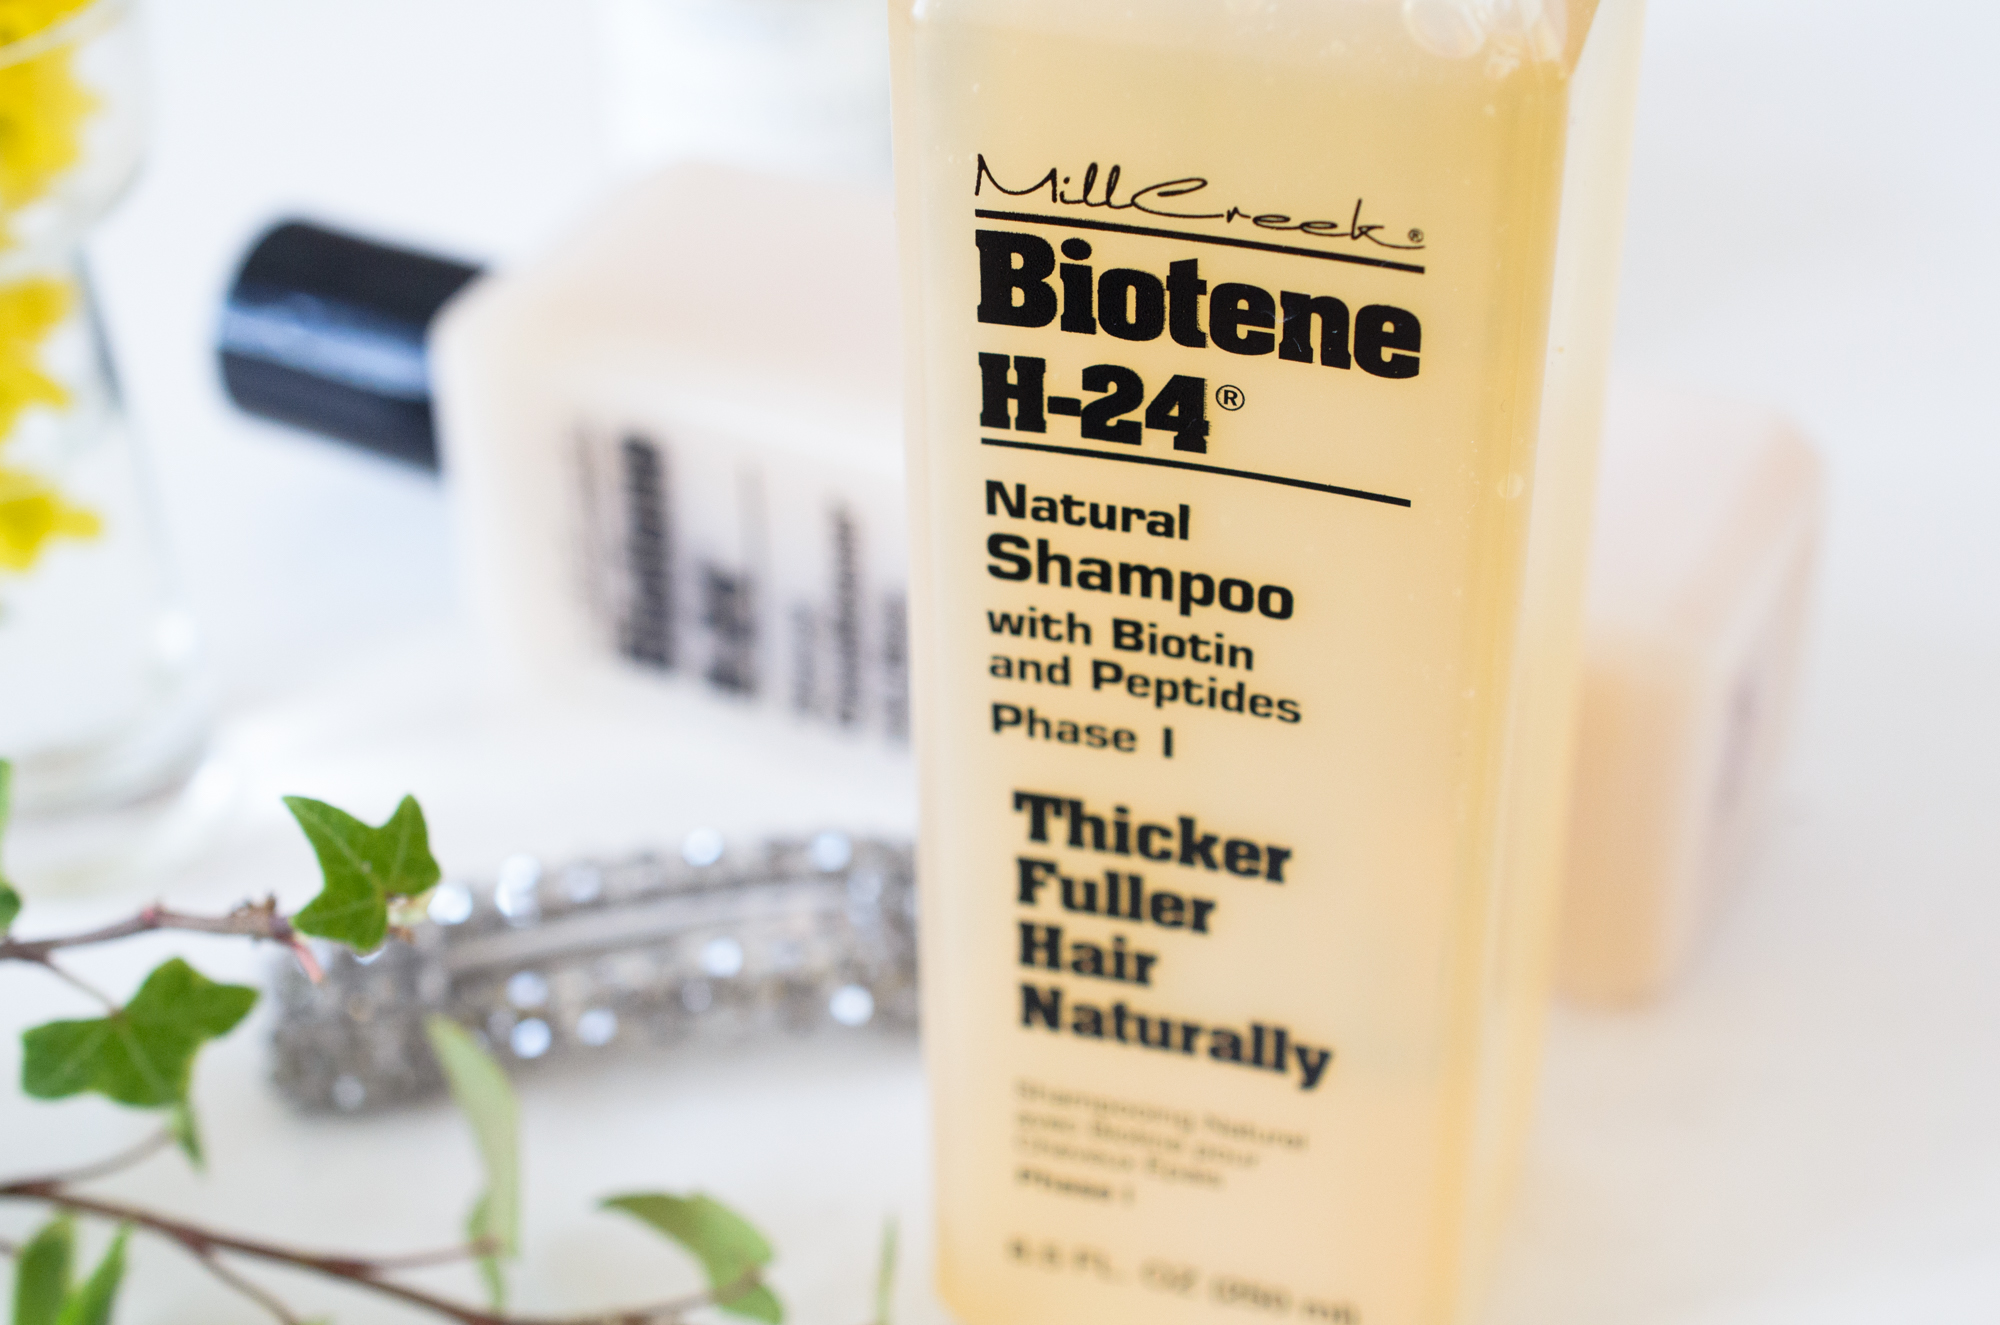 Biotene H-24 Shampoo